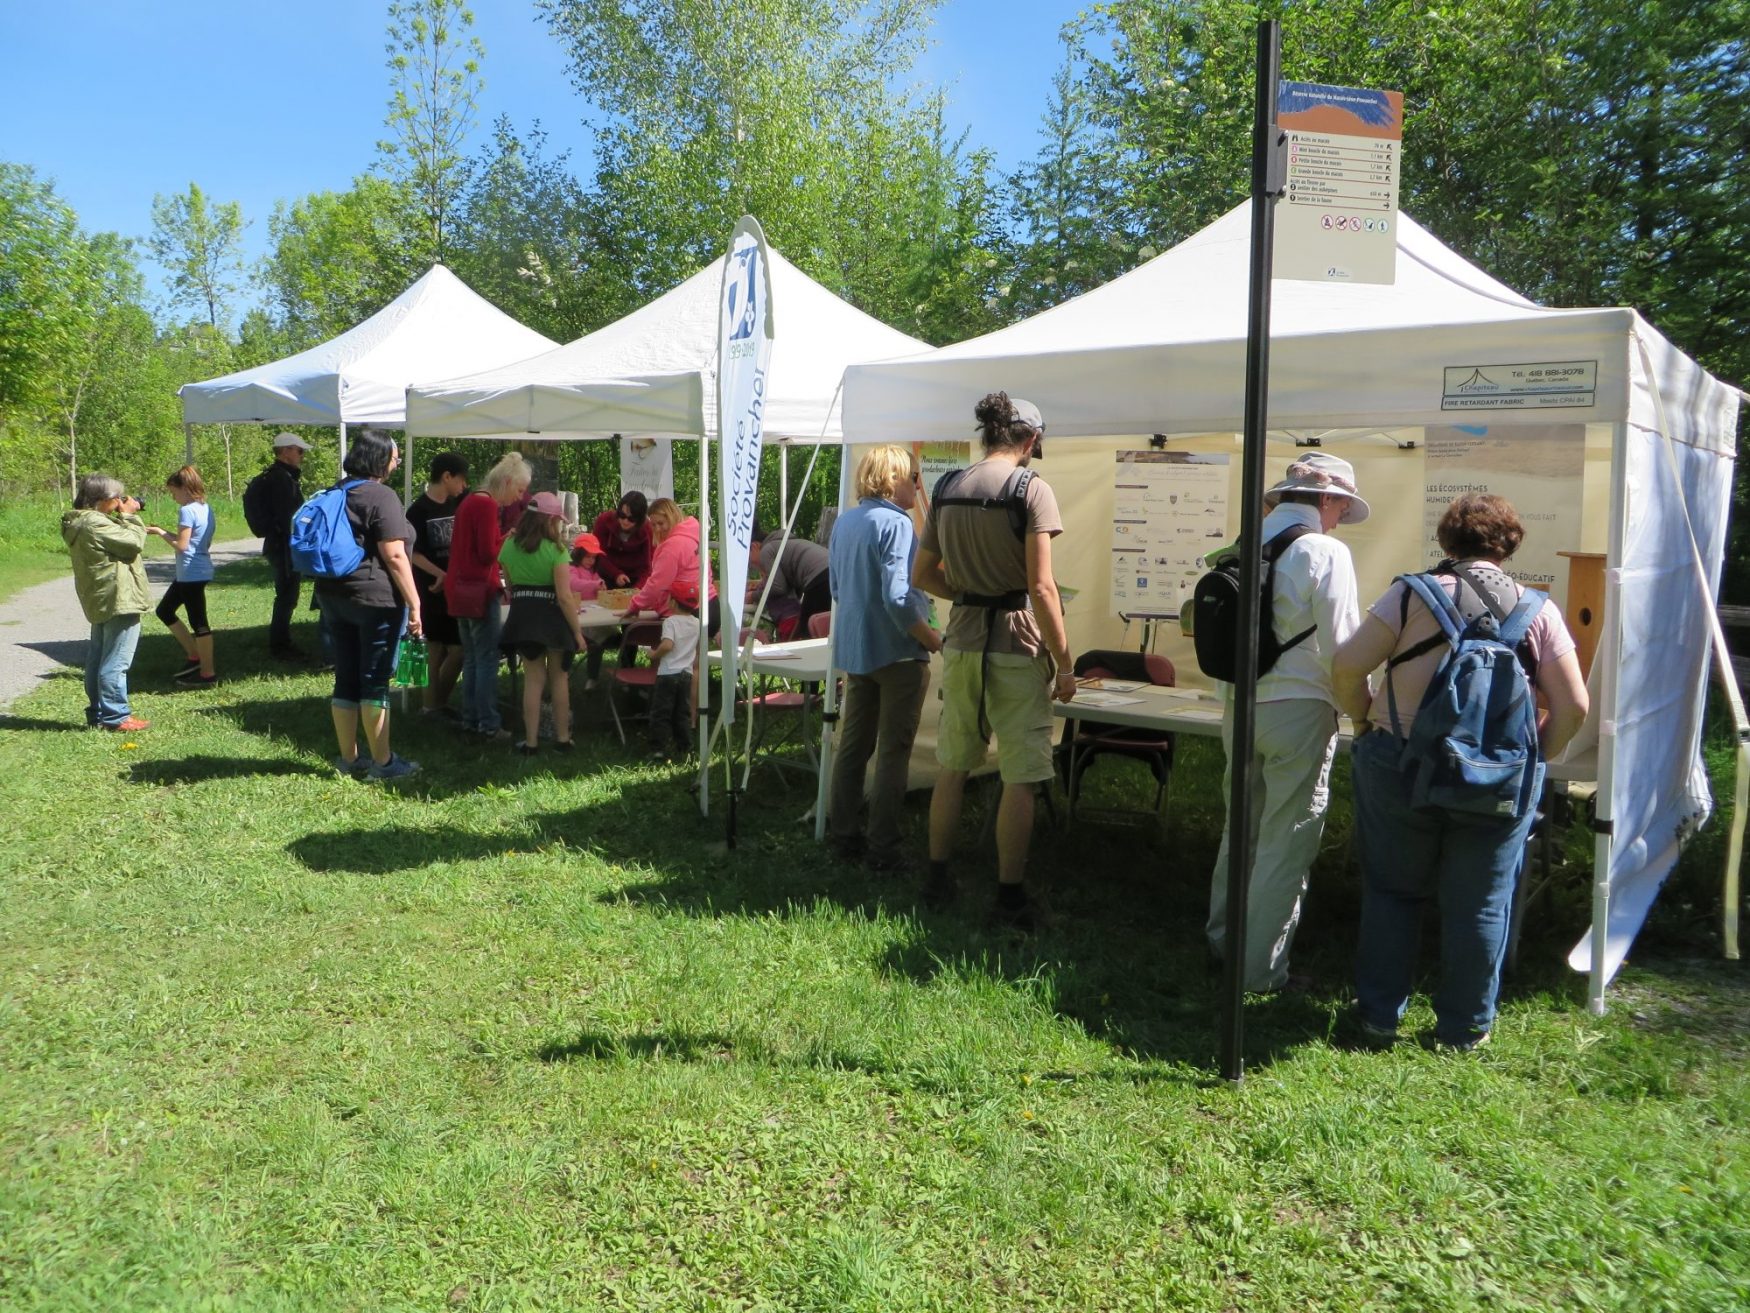 Kiosques d'information lors de la Fête des voisins "Charmants voisins", le 8 juin à la Réserve naturelle du Marais- L.éon-Provancher.